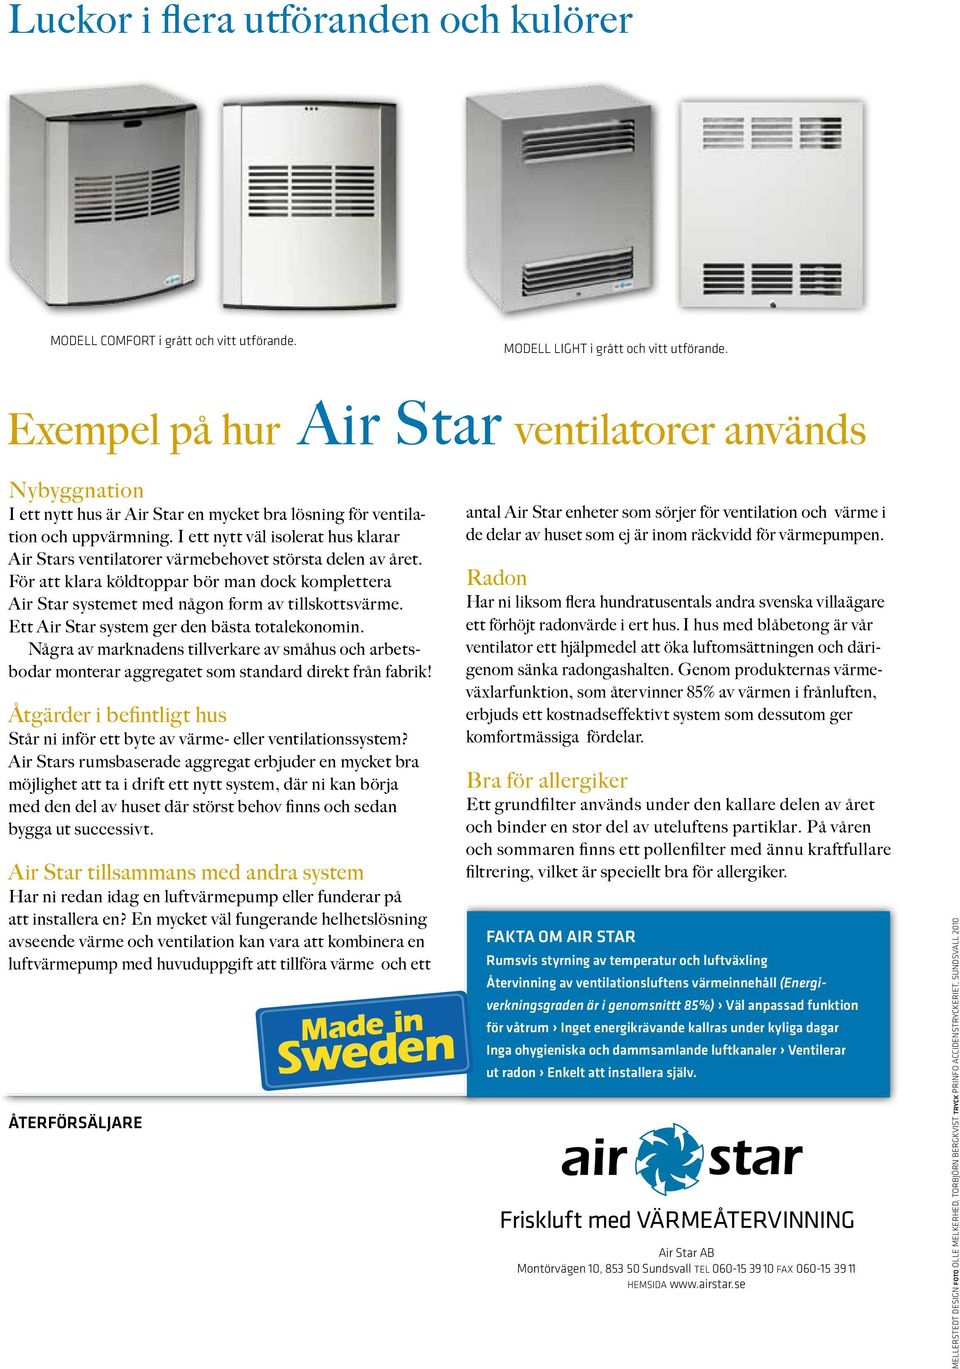 I ett nytt väl isolerat hus klarar Air Stars ventilatorer värmebehovet största delen av året. För att klara köldtoppar bör man dock komplettera Air Star systemet med någon form av tillskottsvärme.